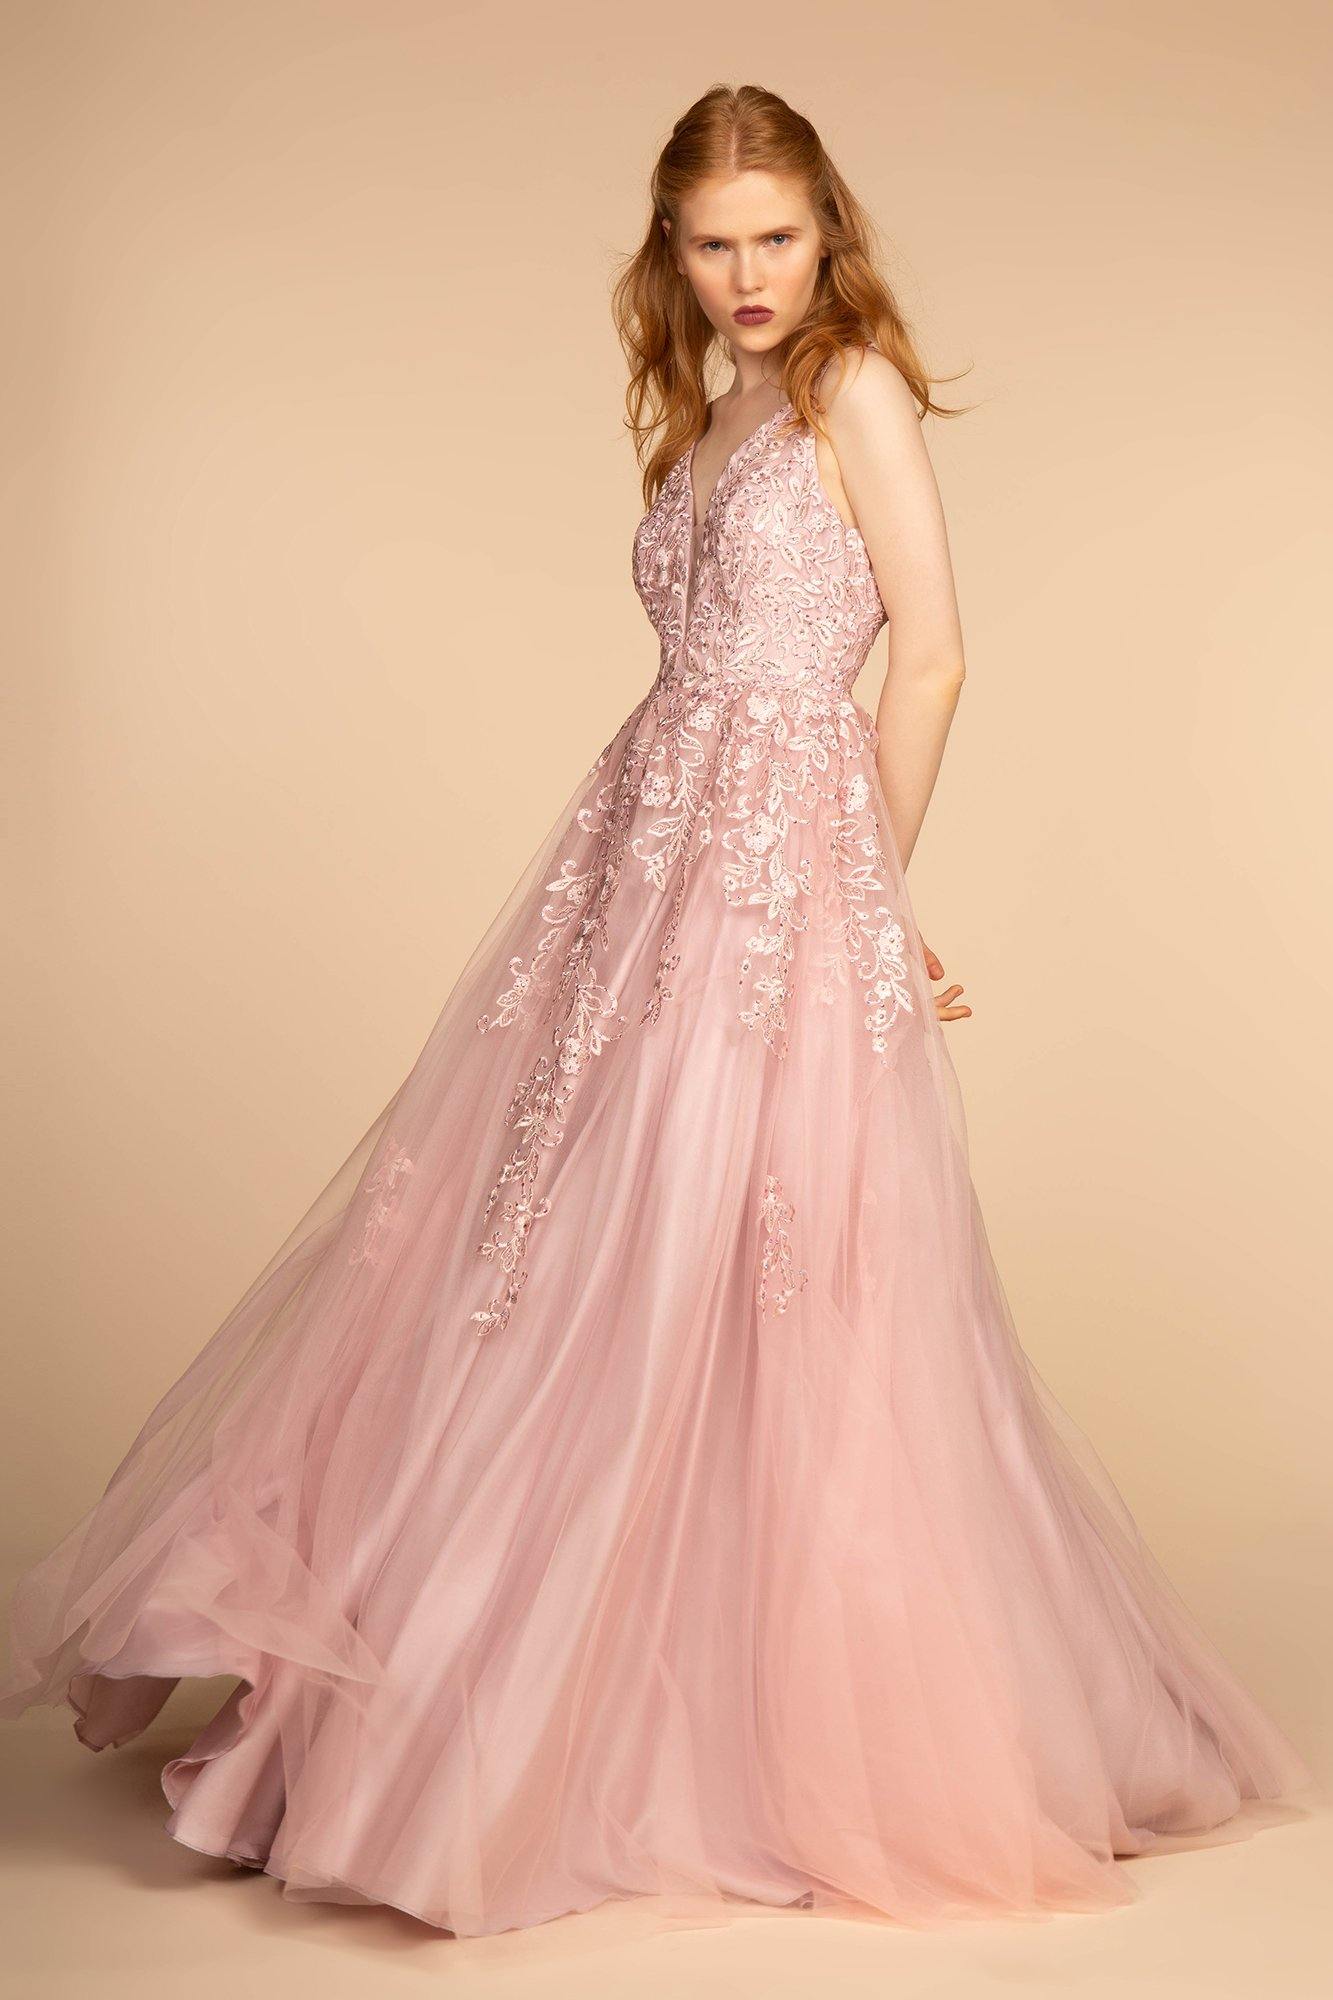 Jewel Embellished Illusion Deep V-Neck Long Dress - The Dress Outlet Elizabeth K